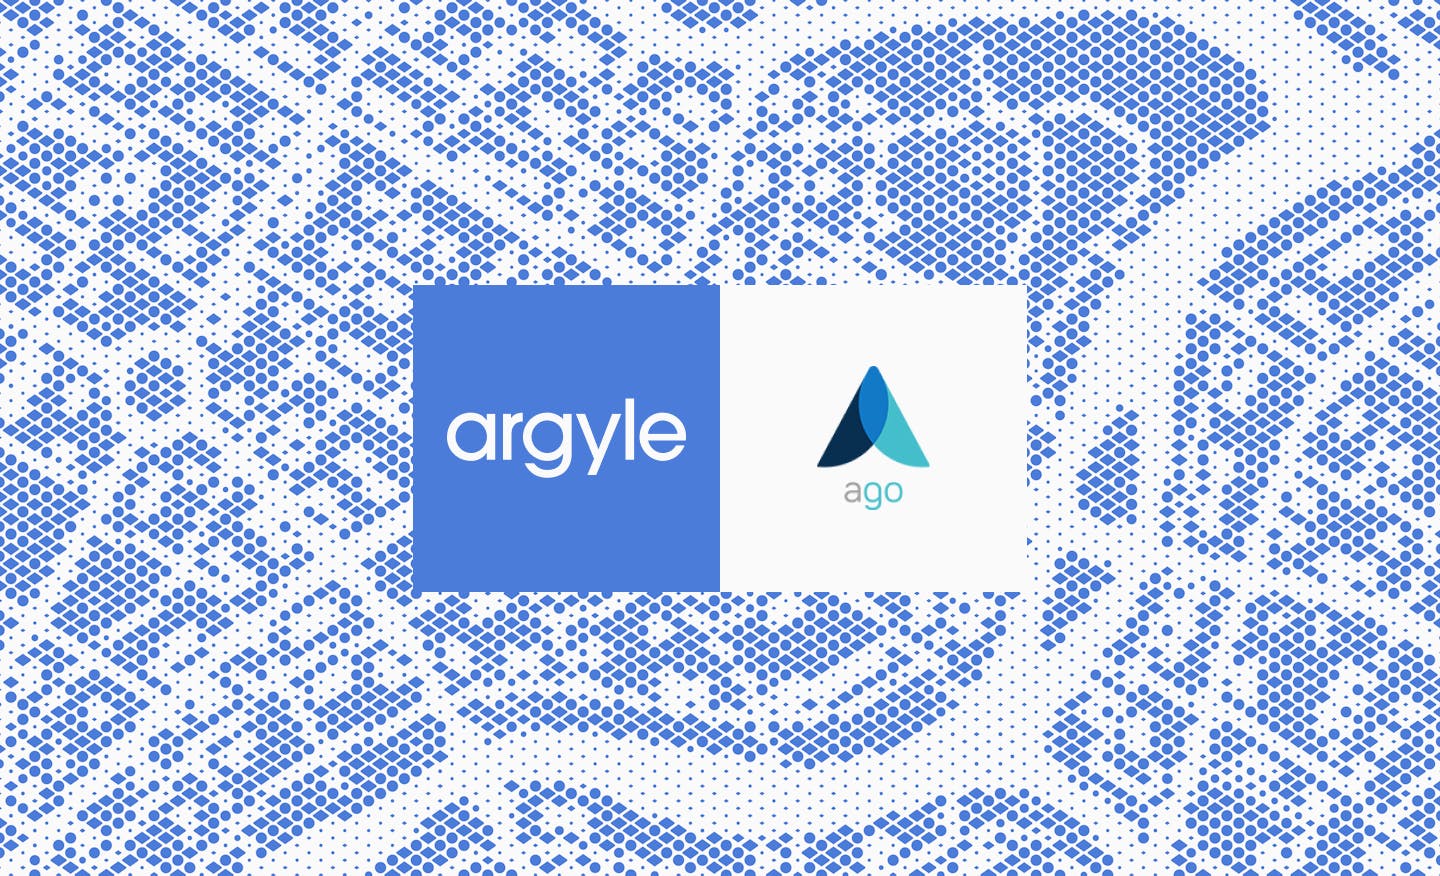 Argyle and Ago logos